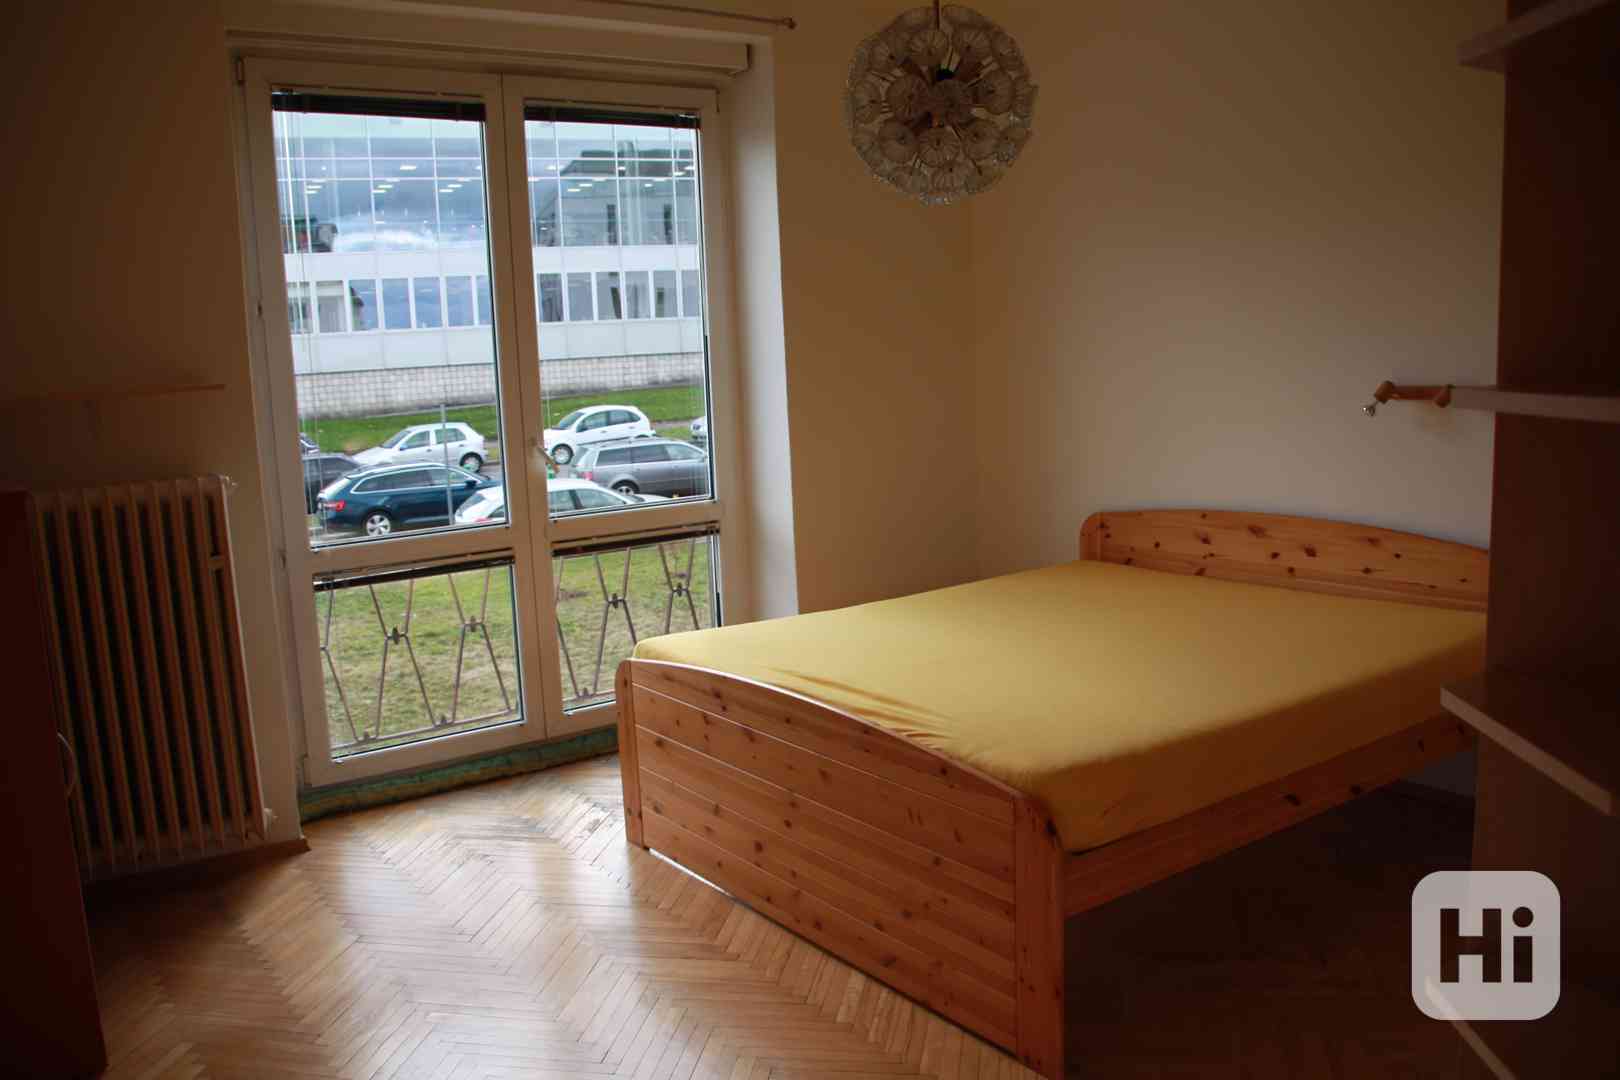 Pronajmu byt v Praze Podolí - foto 1